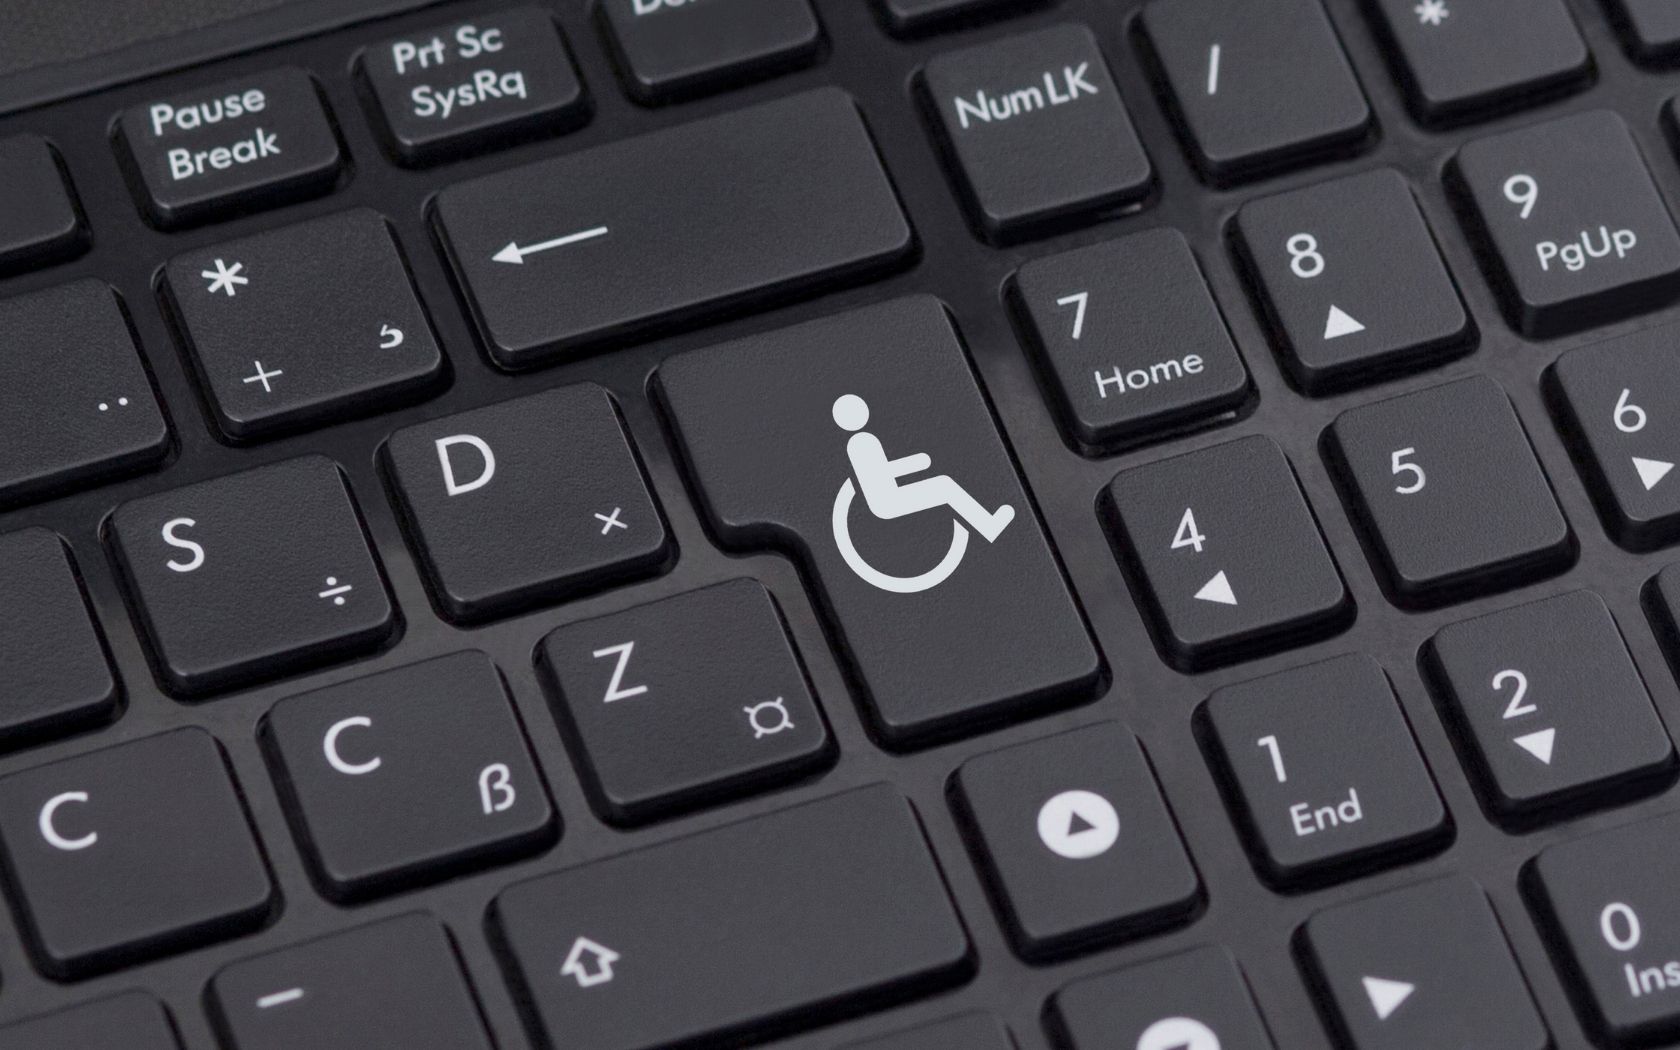 klawiatura komputerowa z symbolem osoby niepełnosprawnej ruchowo na klawiszu Enter